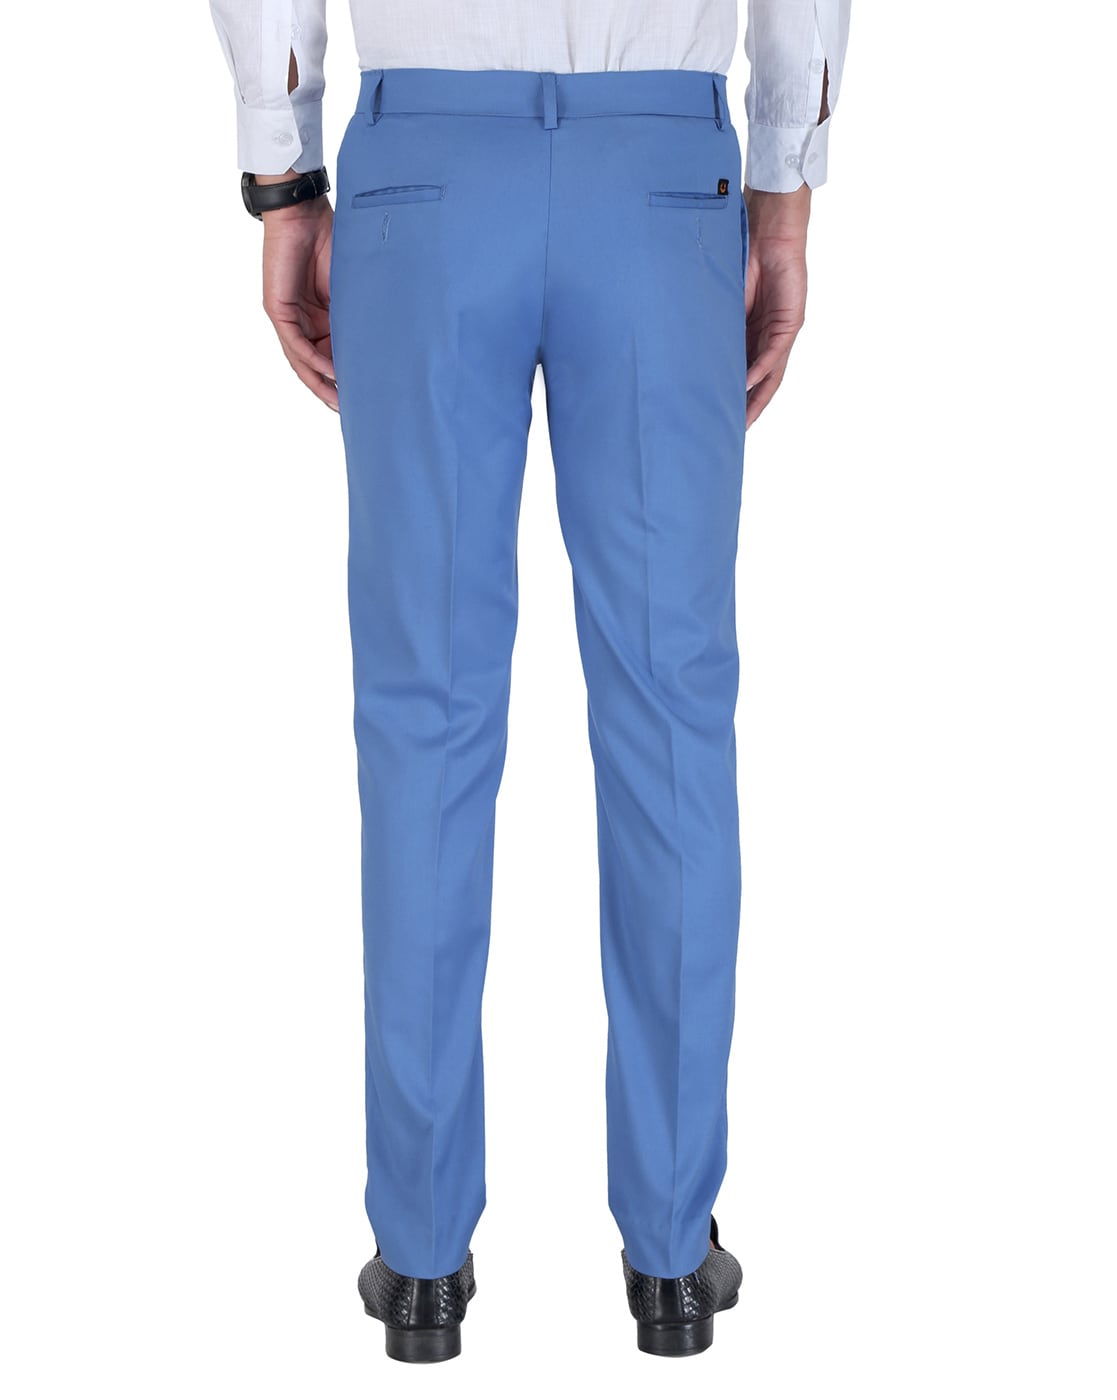 Buy Van Heusen Blue Trousers Online  677047  Van Heusen